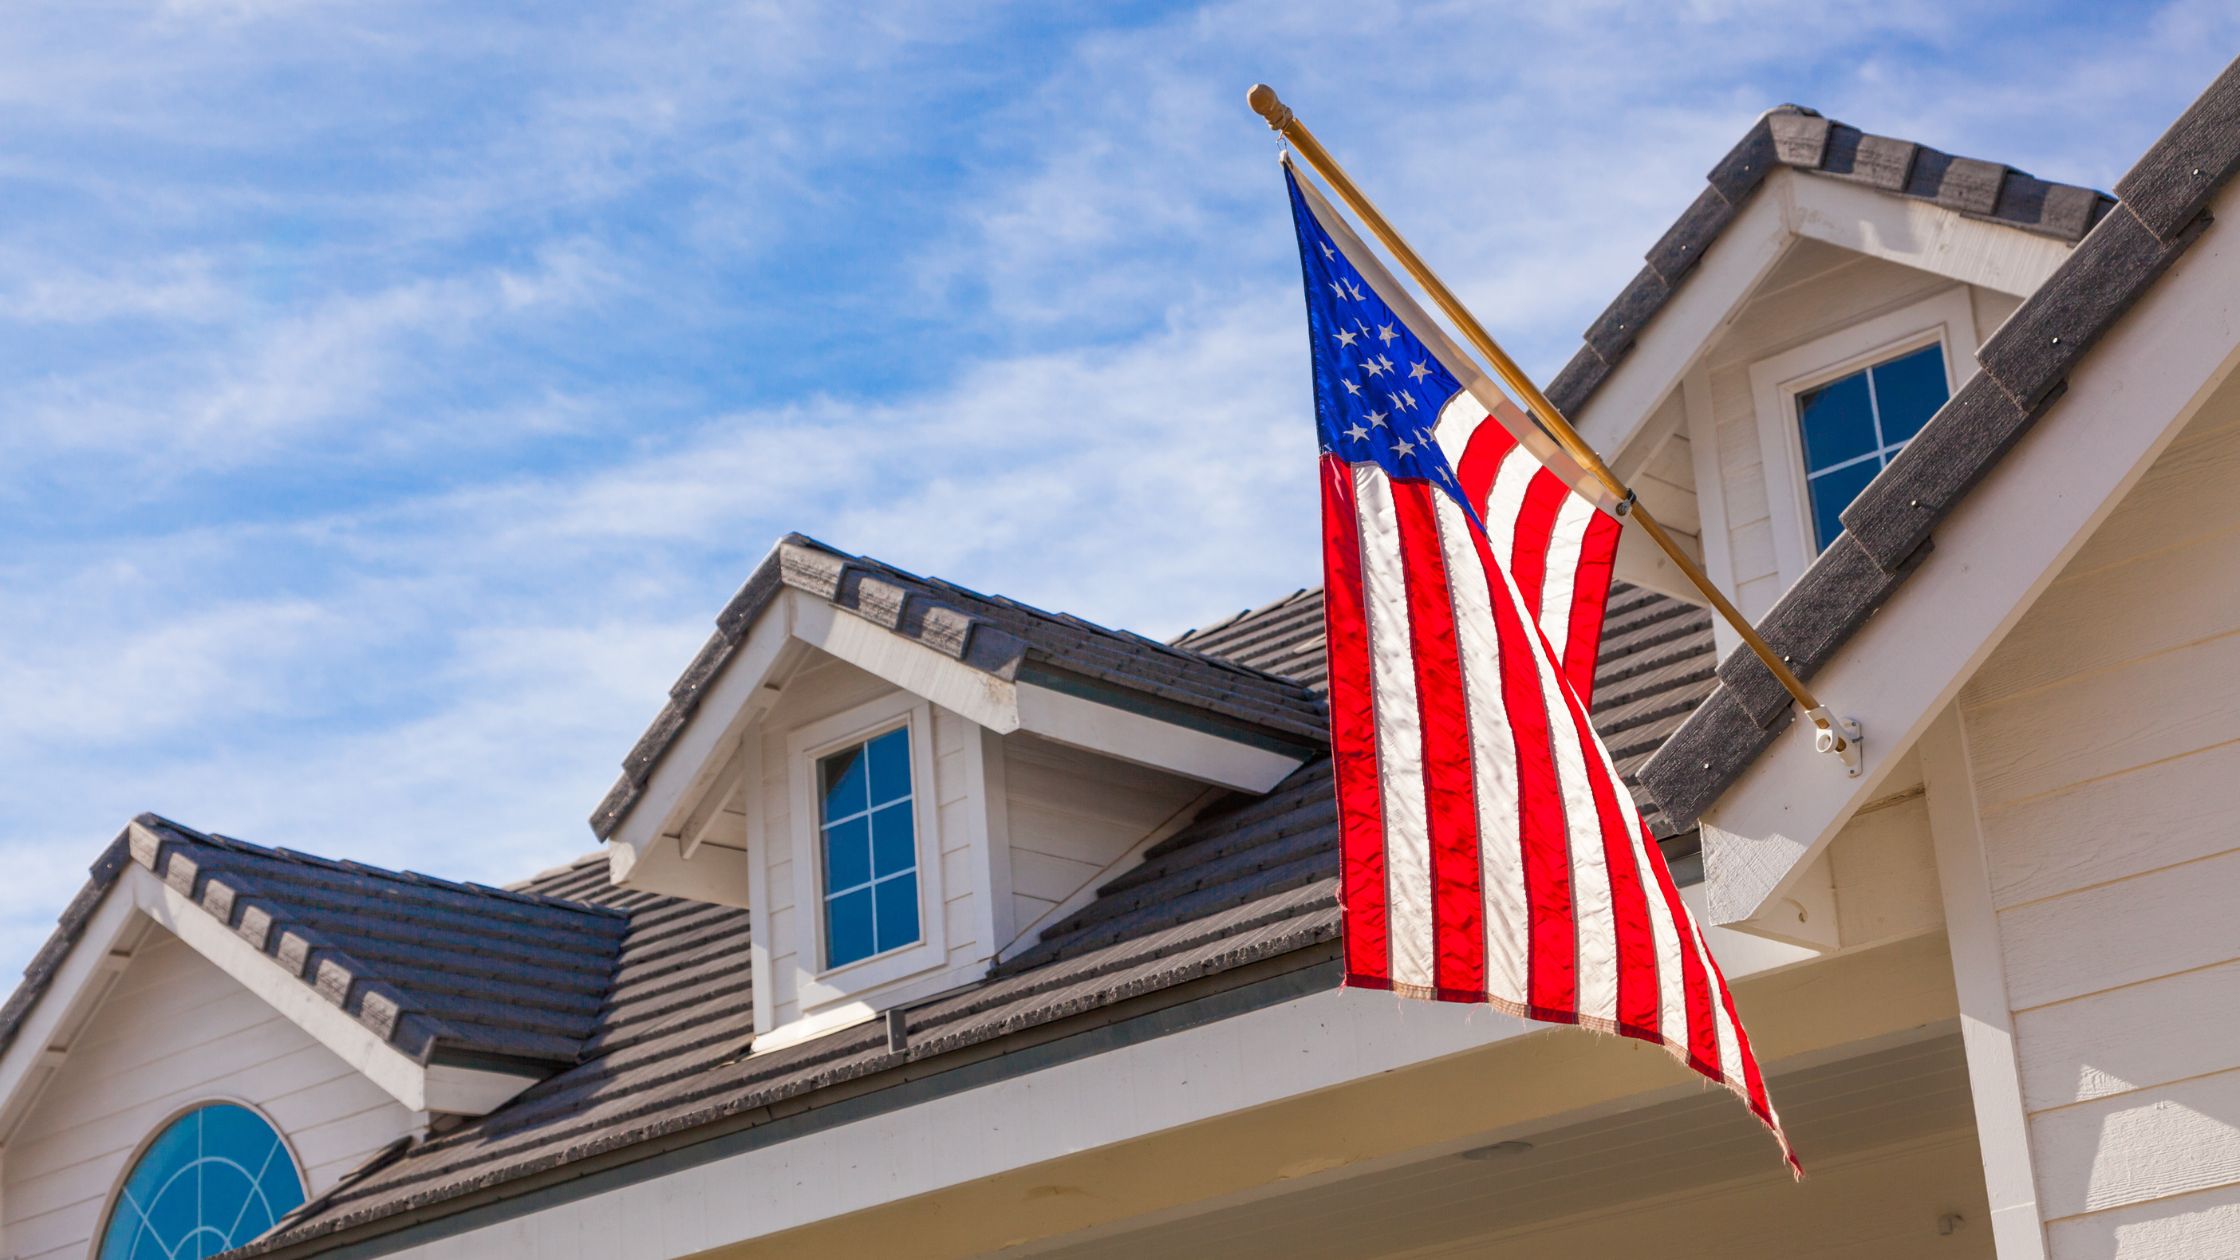 O preço das casas e o valor dos imóveis nos EUA